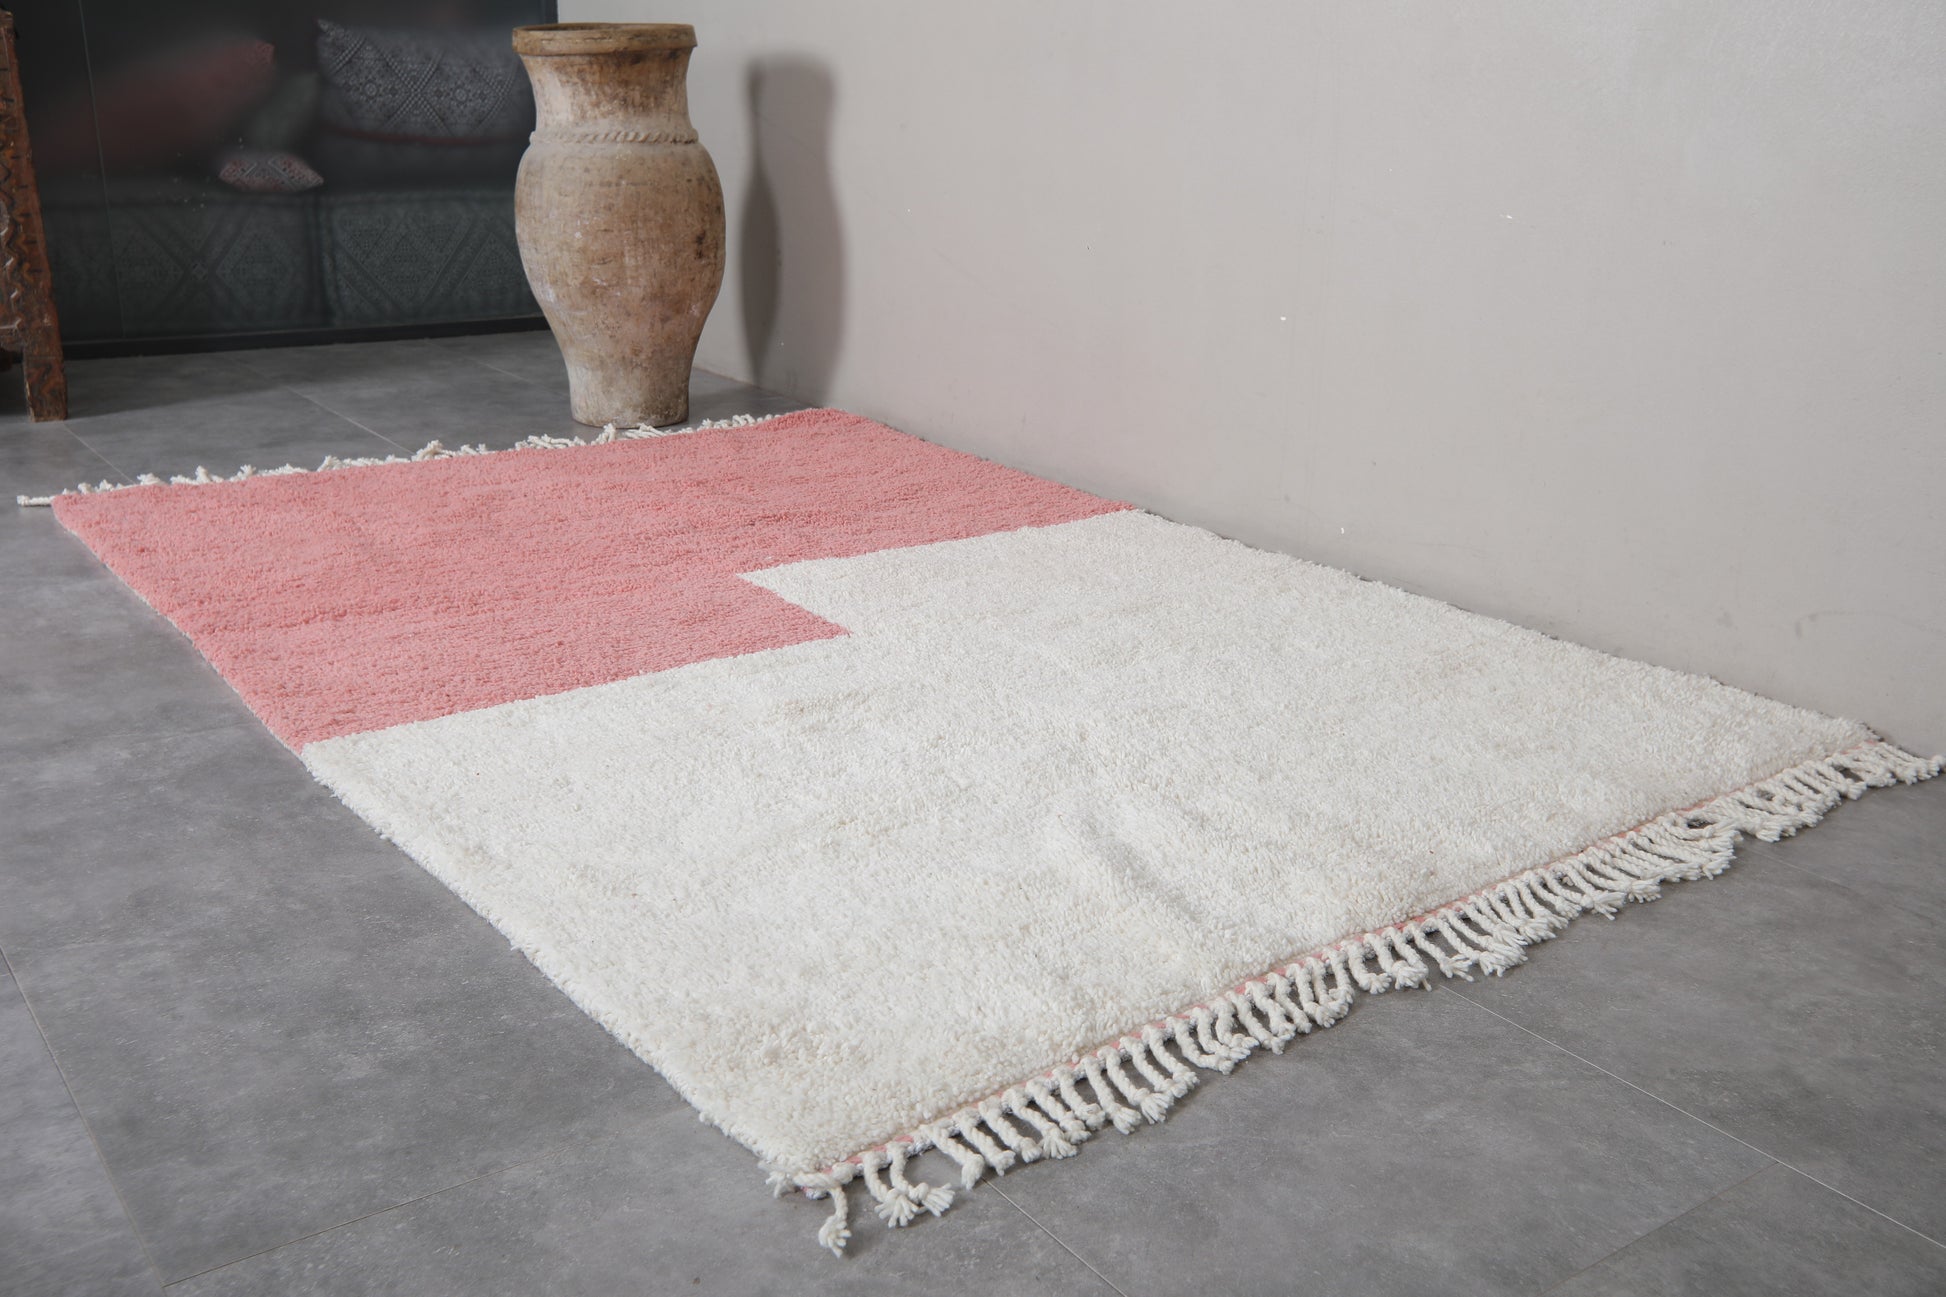 Moroccan rug 6 X 9 Feet - Beni ourain rugs